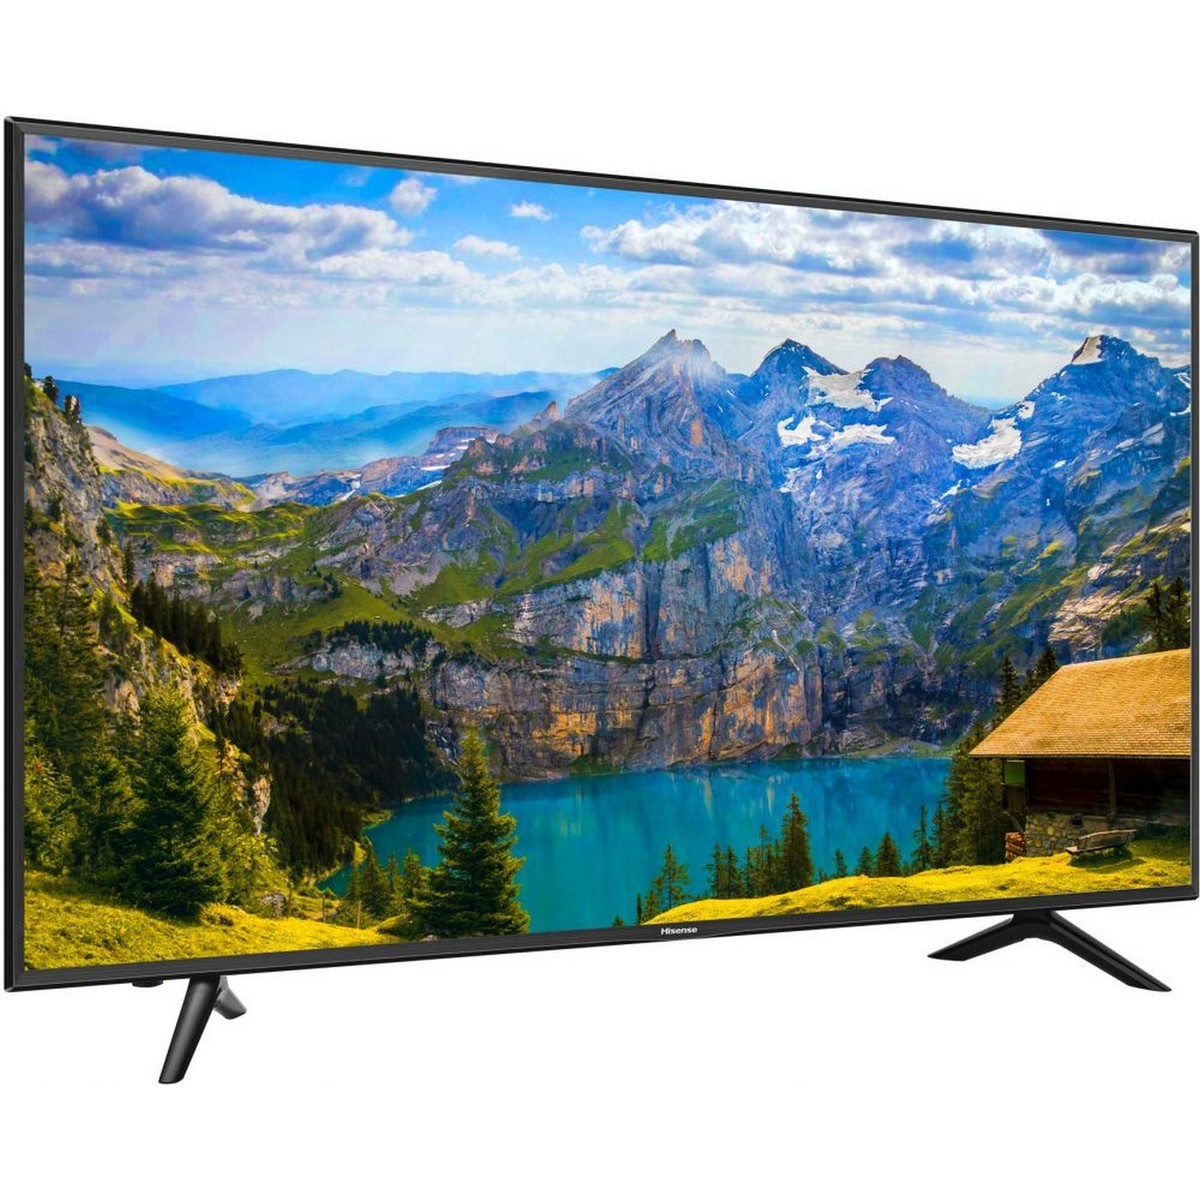 Hisense Ultra HD Smart LED TV 65N3000UW 65inch